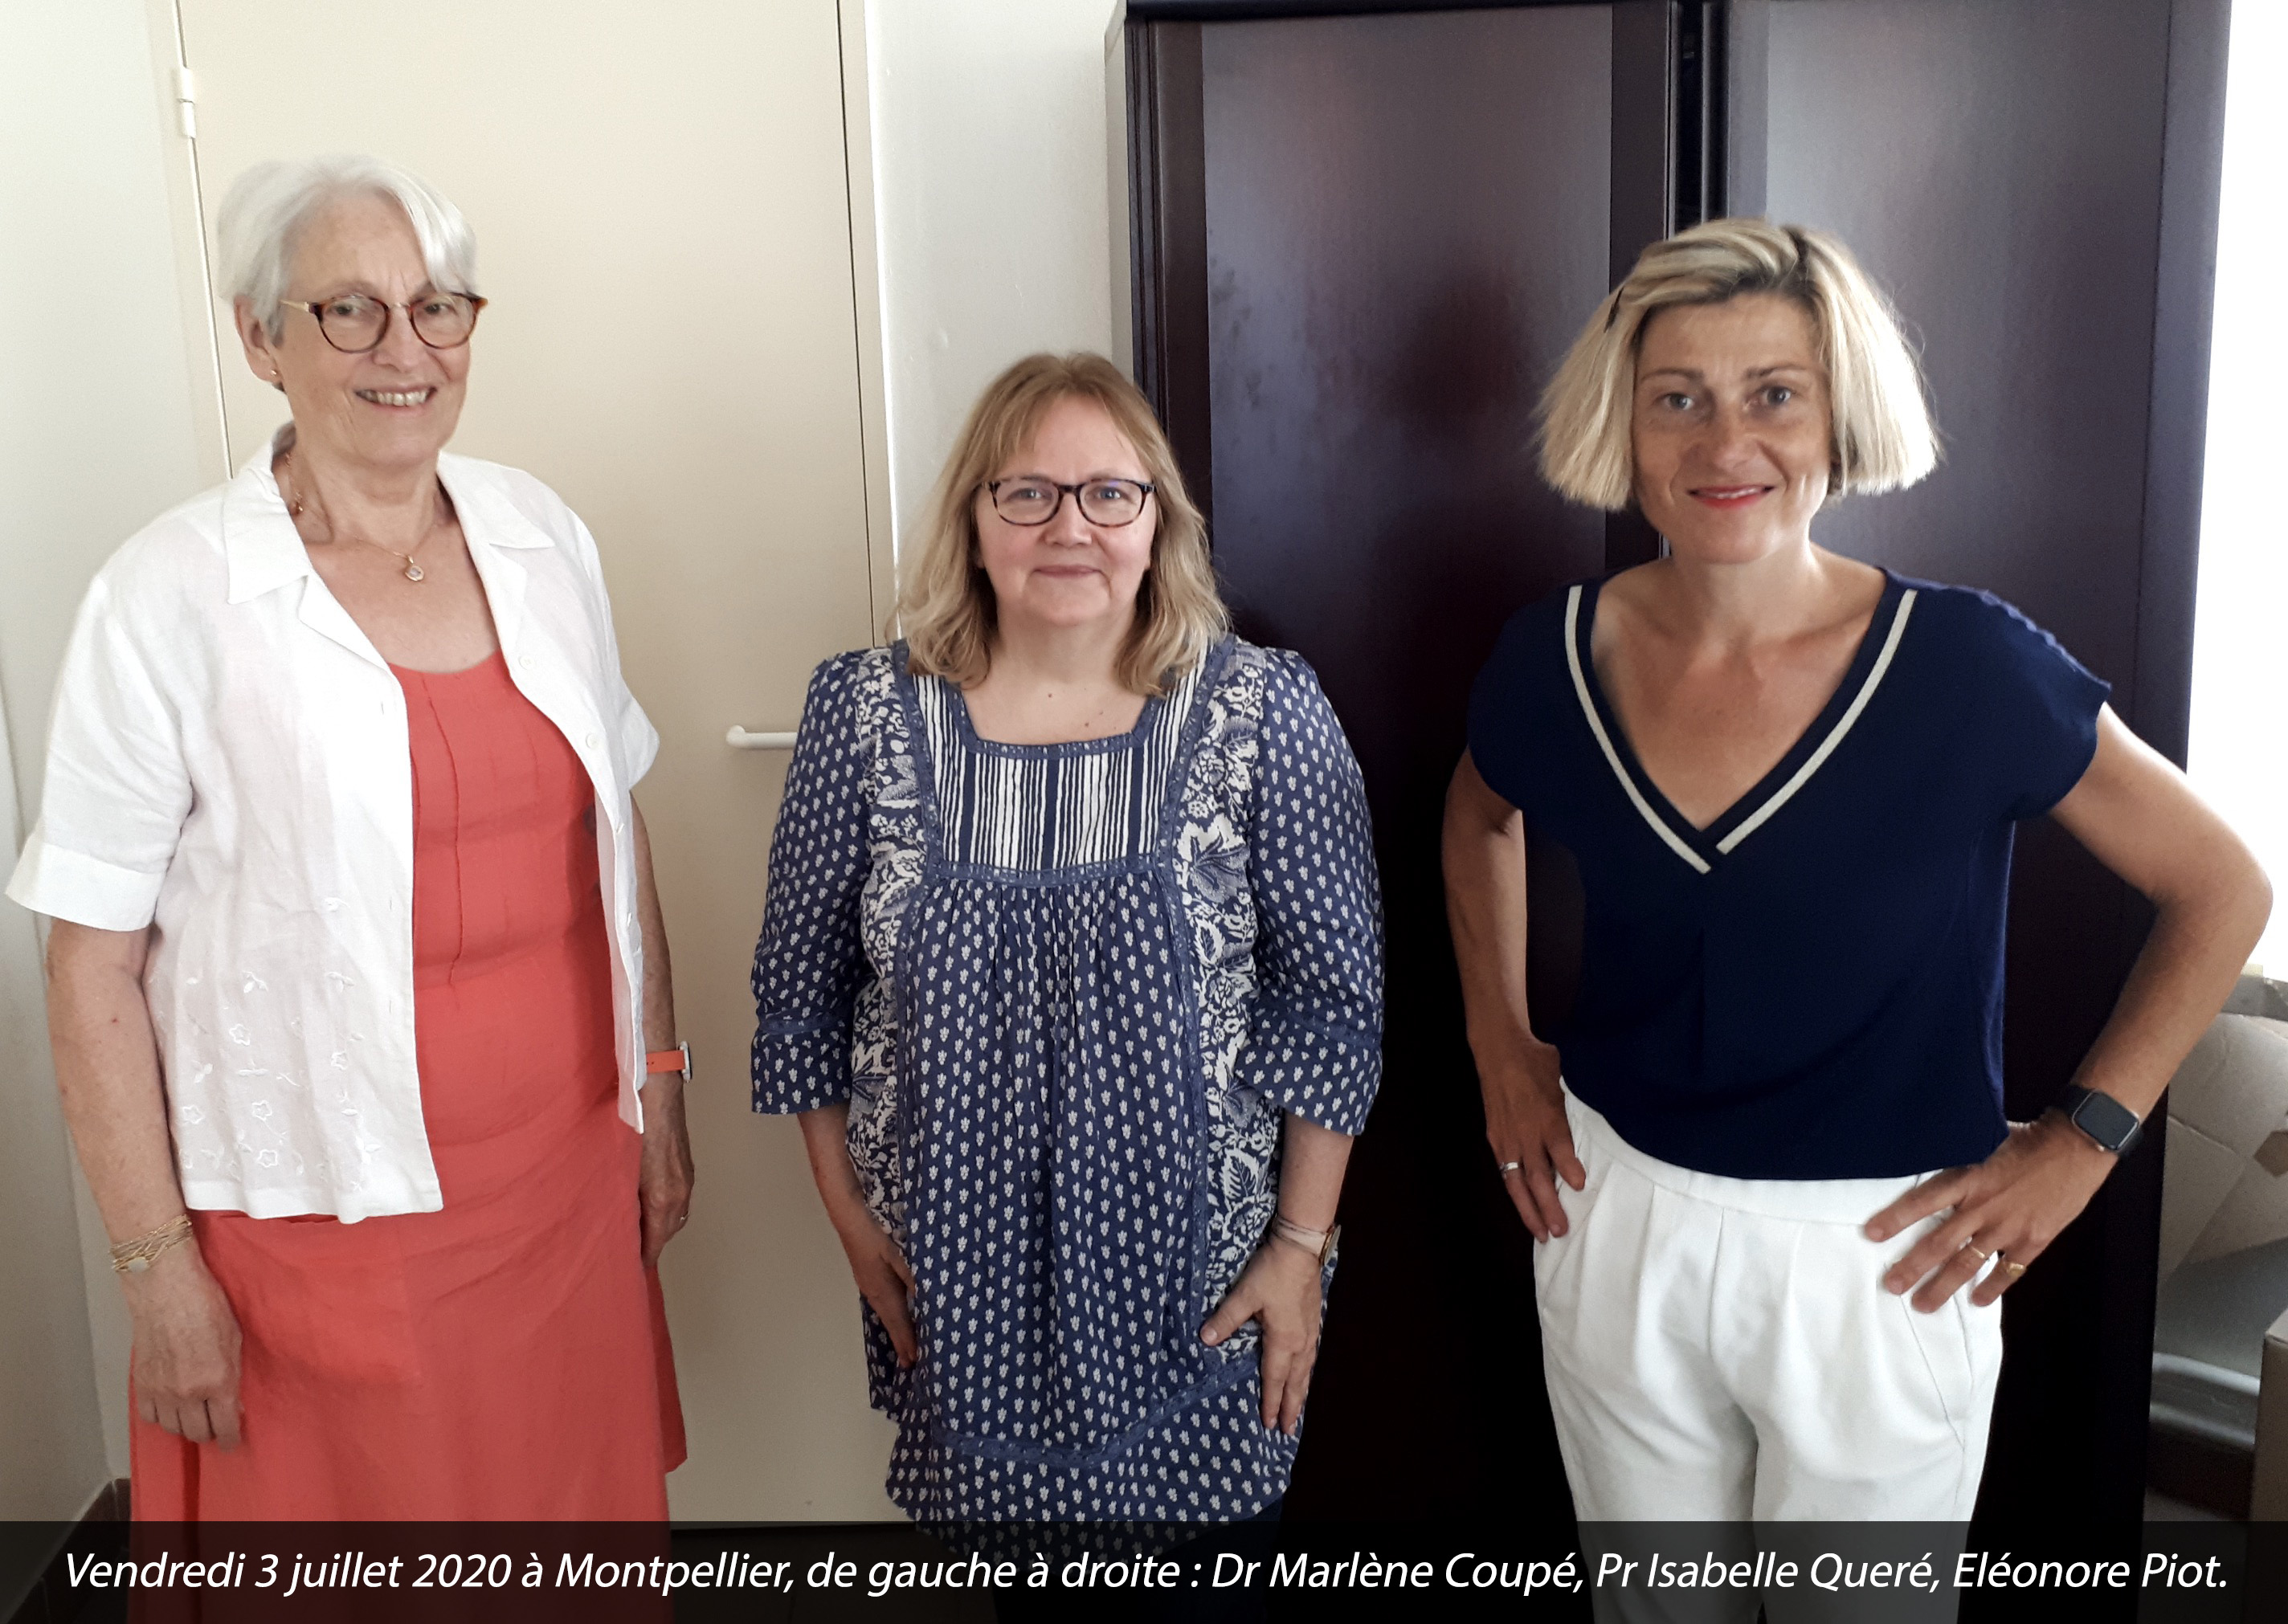 Vendredi 3 juillet 2020 : de passage à Montpellier, Eléonore Piot en présence du professeur Isabelle Quéré et du docteur Marlène Coupé